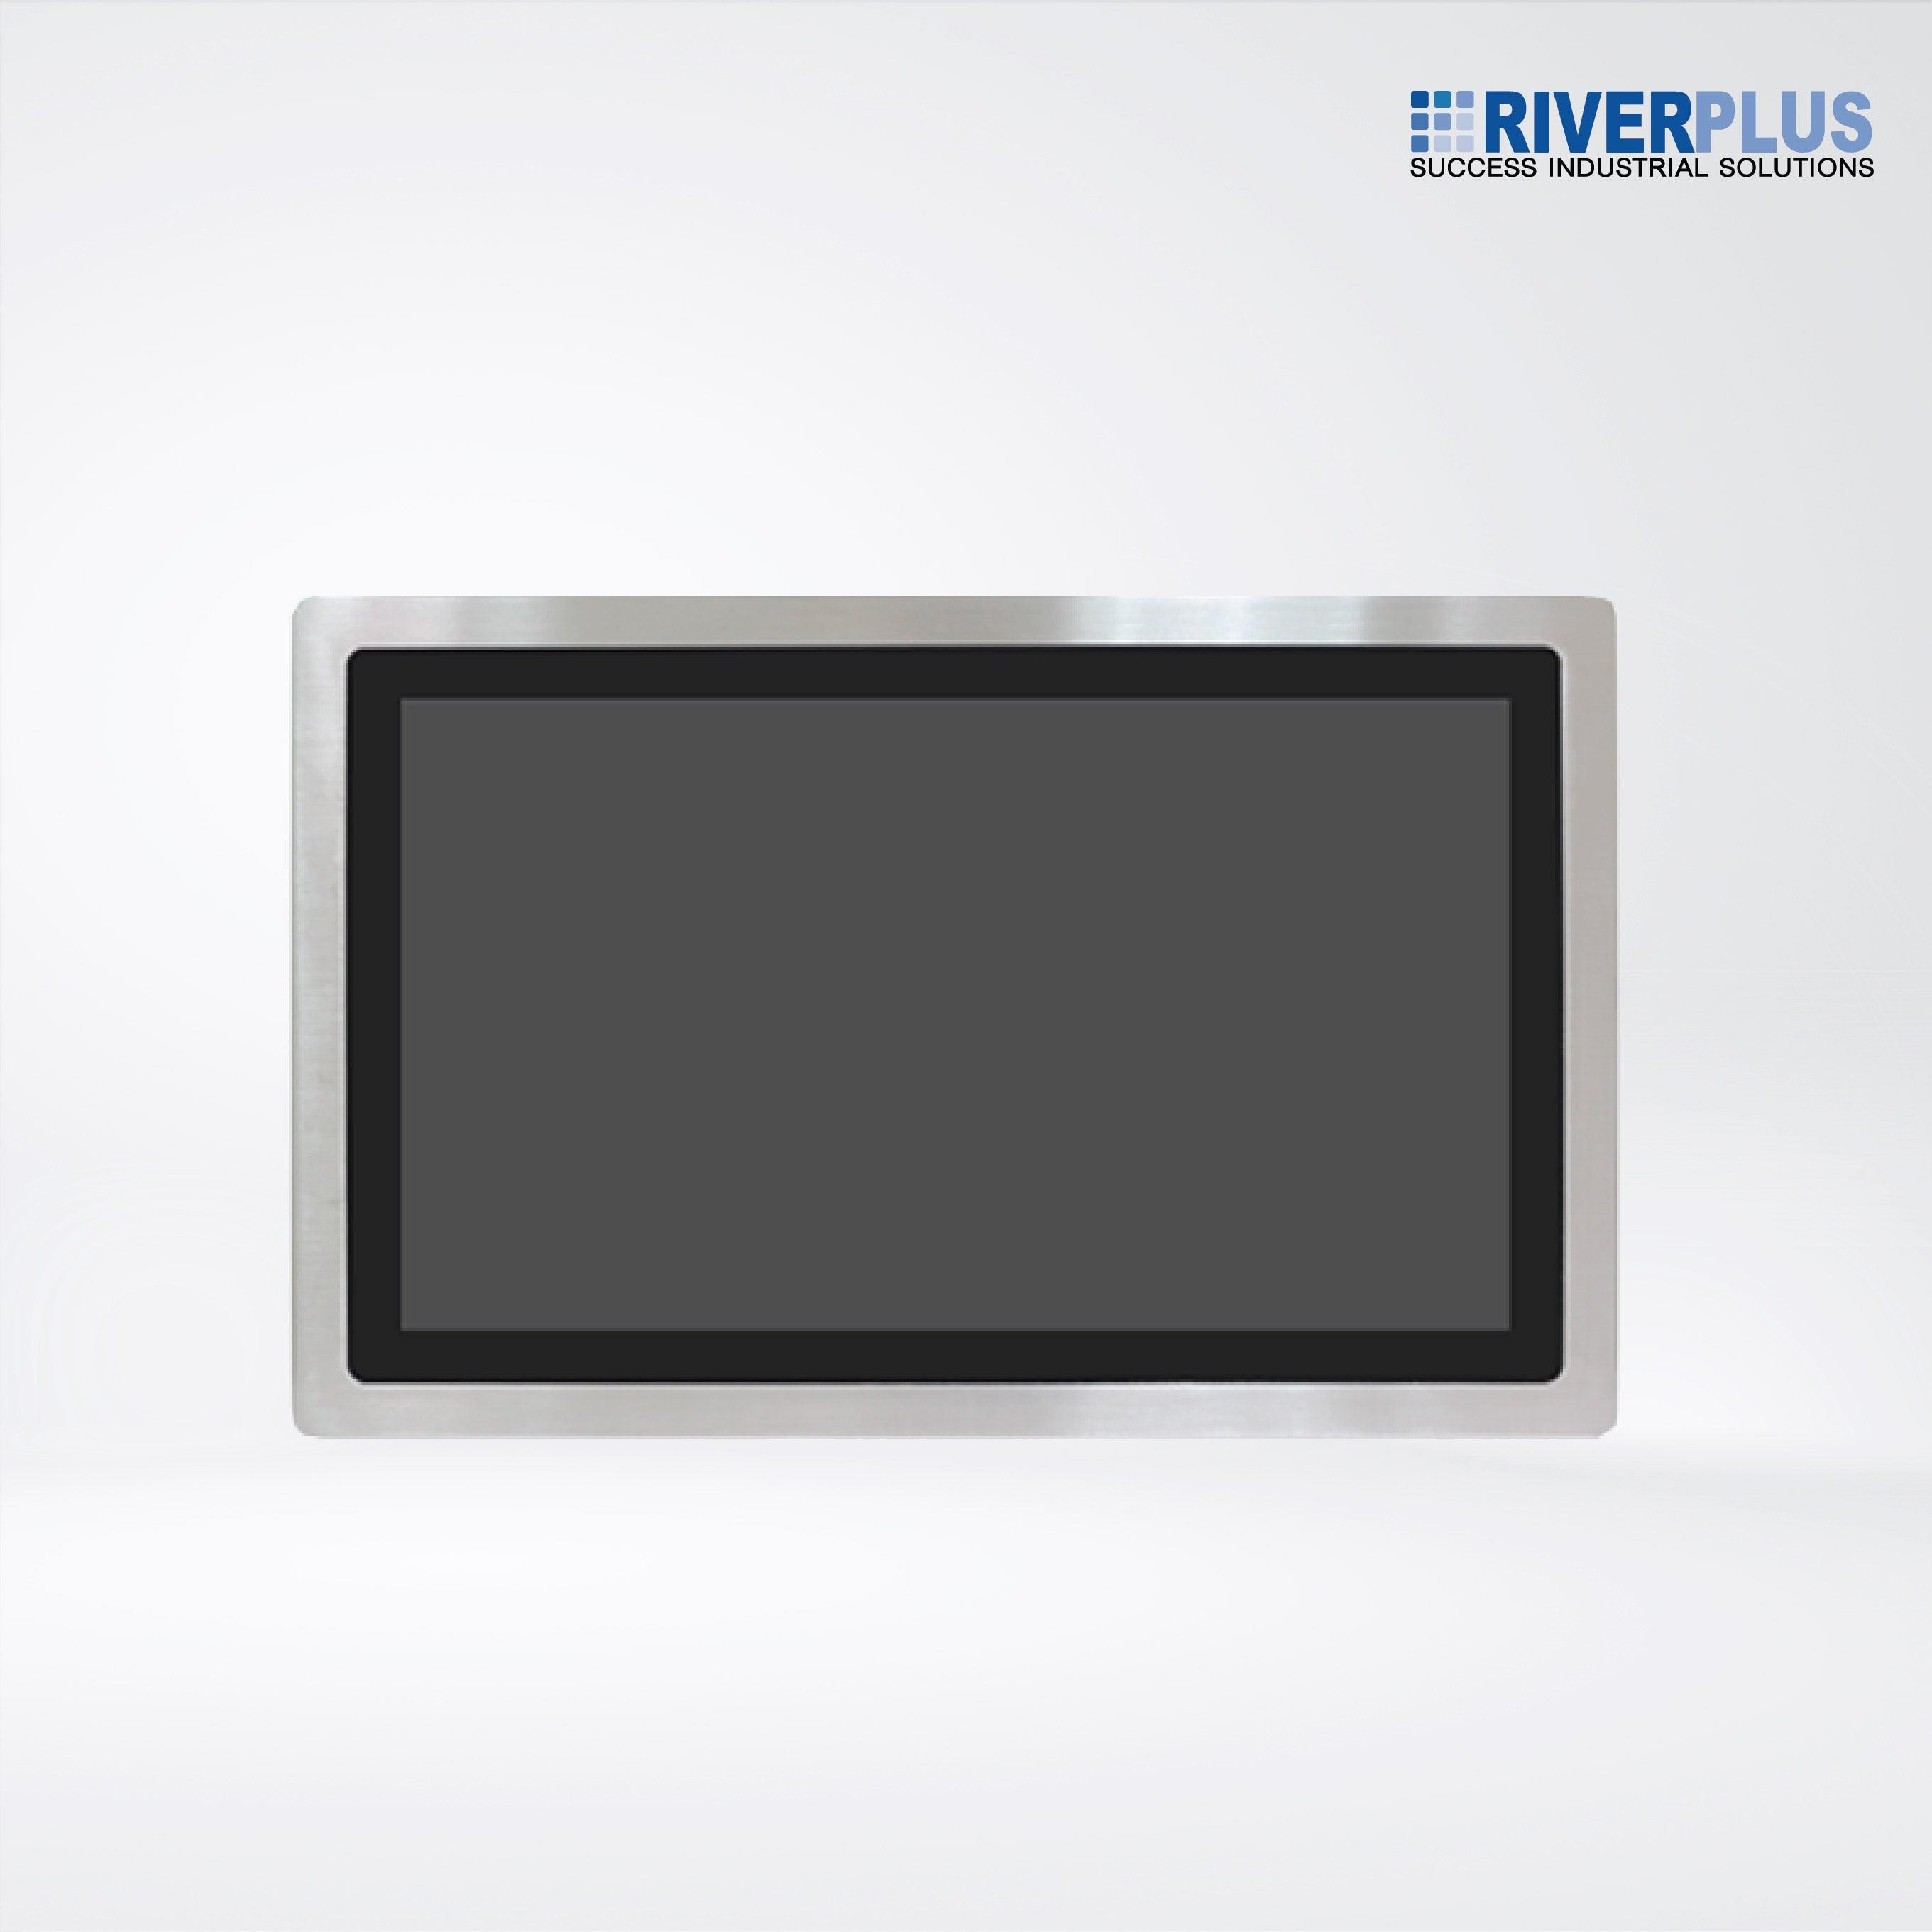 AEx-121P 21.5” ATEX Certified Stainless Steel Display - Riverplus